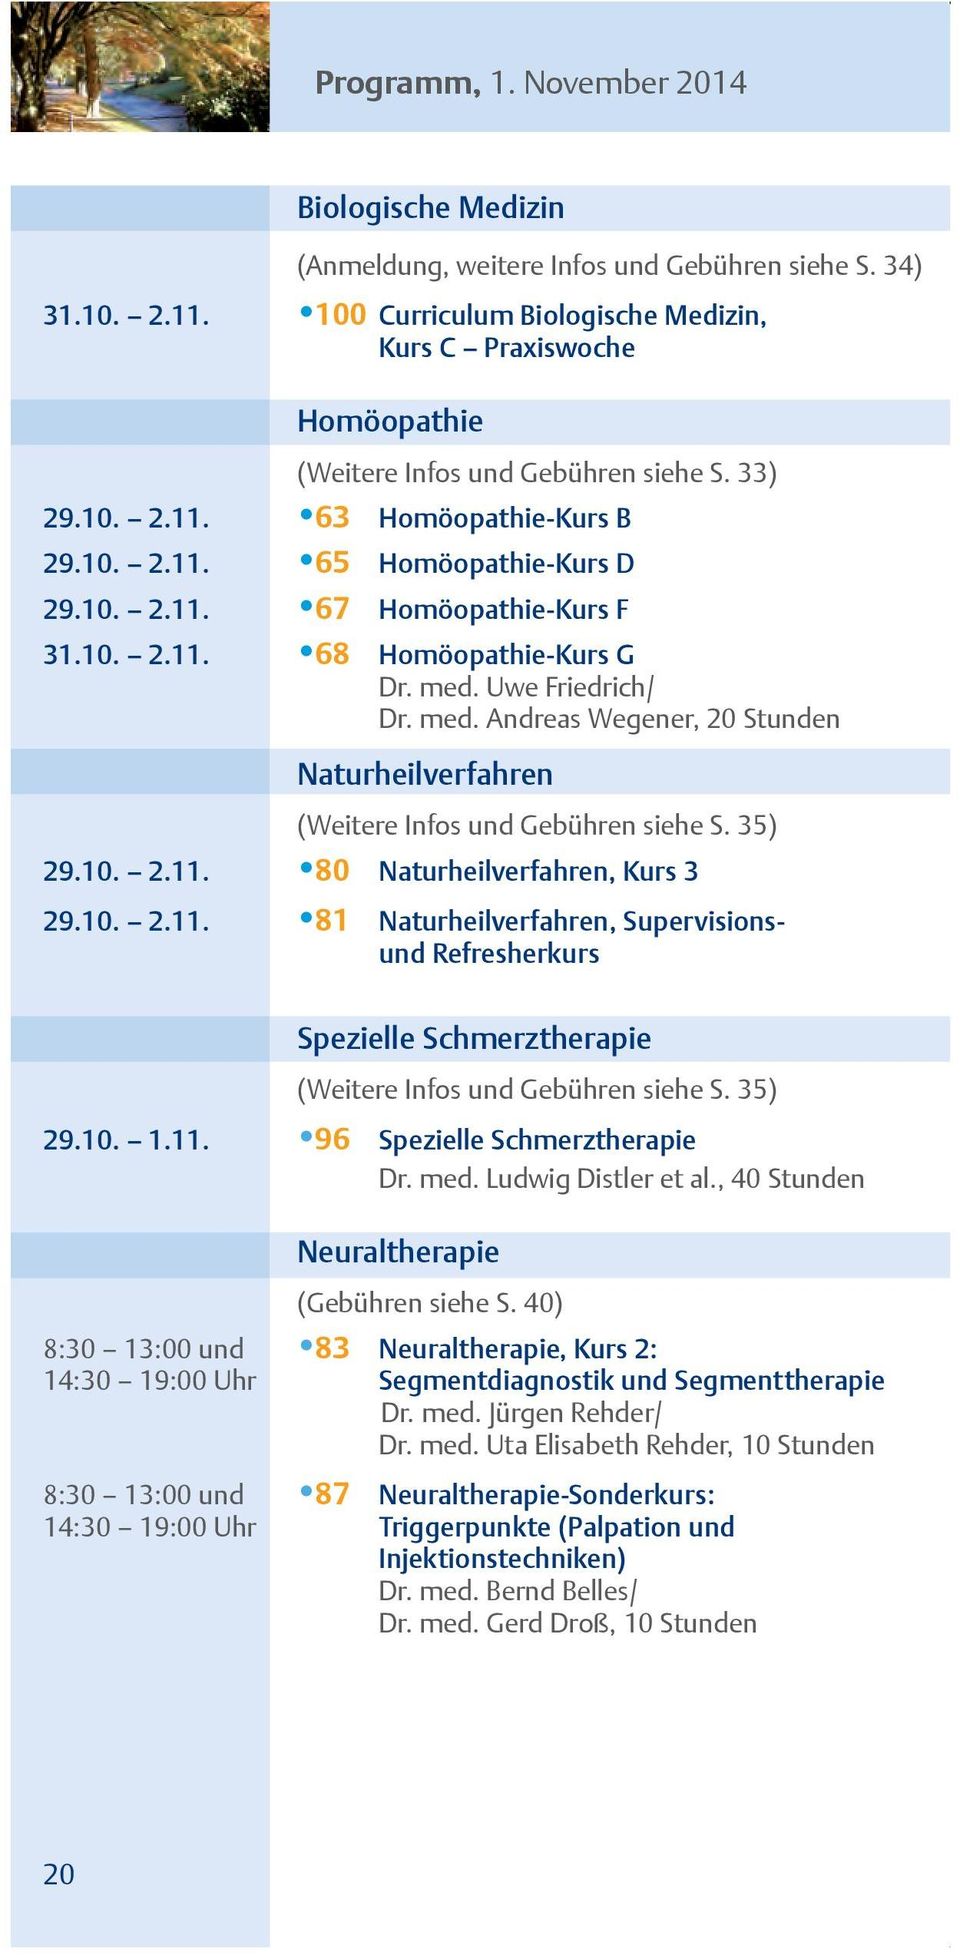 10. 2.11. 68 Homöopathie-Kurs G Dr. med. Uwe Friedrich/ Dr. med. Andreas Wegener, 20 Stunden Naturheilverfahren (Weitere Infos und Gebühren siehe S. 35) 29.10. 2.11. 80 Naturheilverfahren, Kurs 3 29.